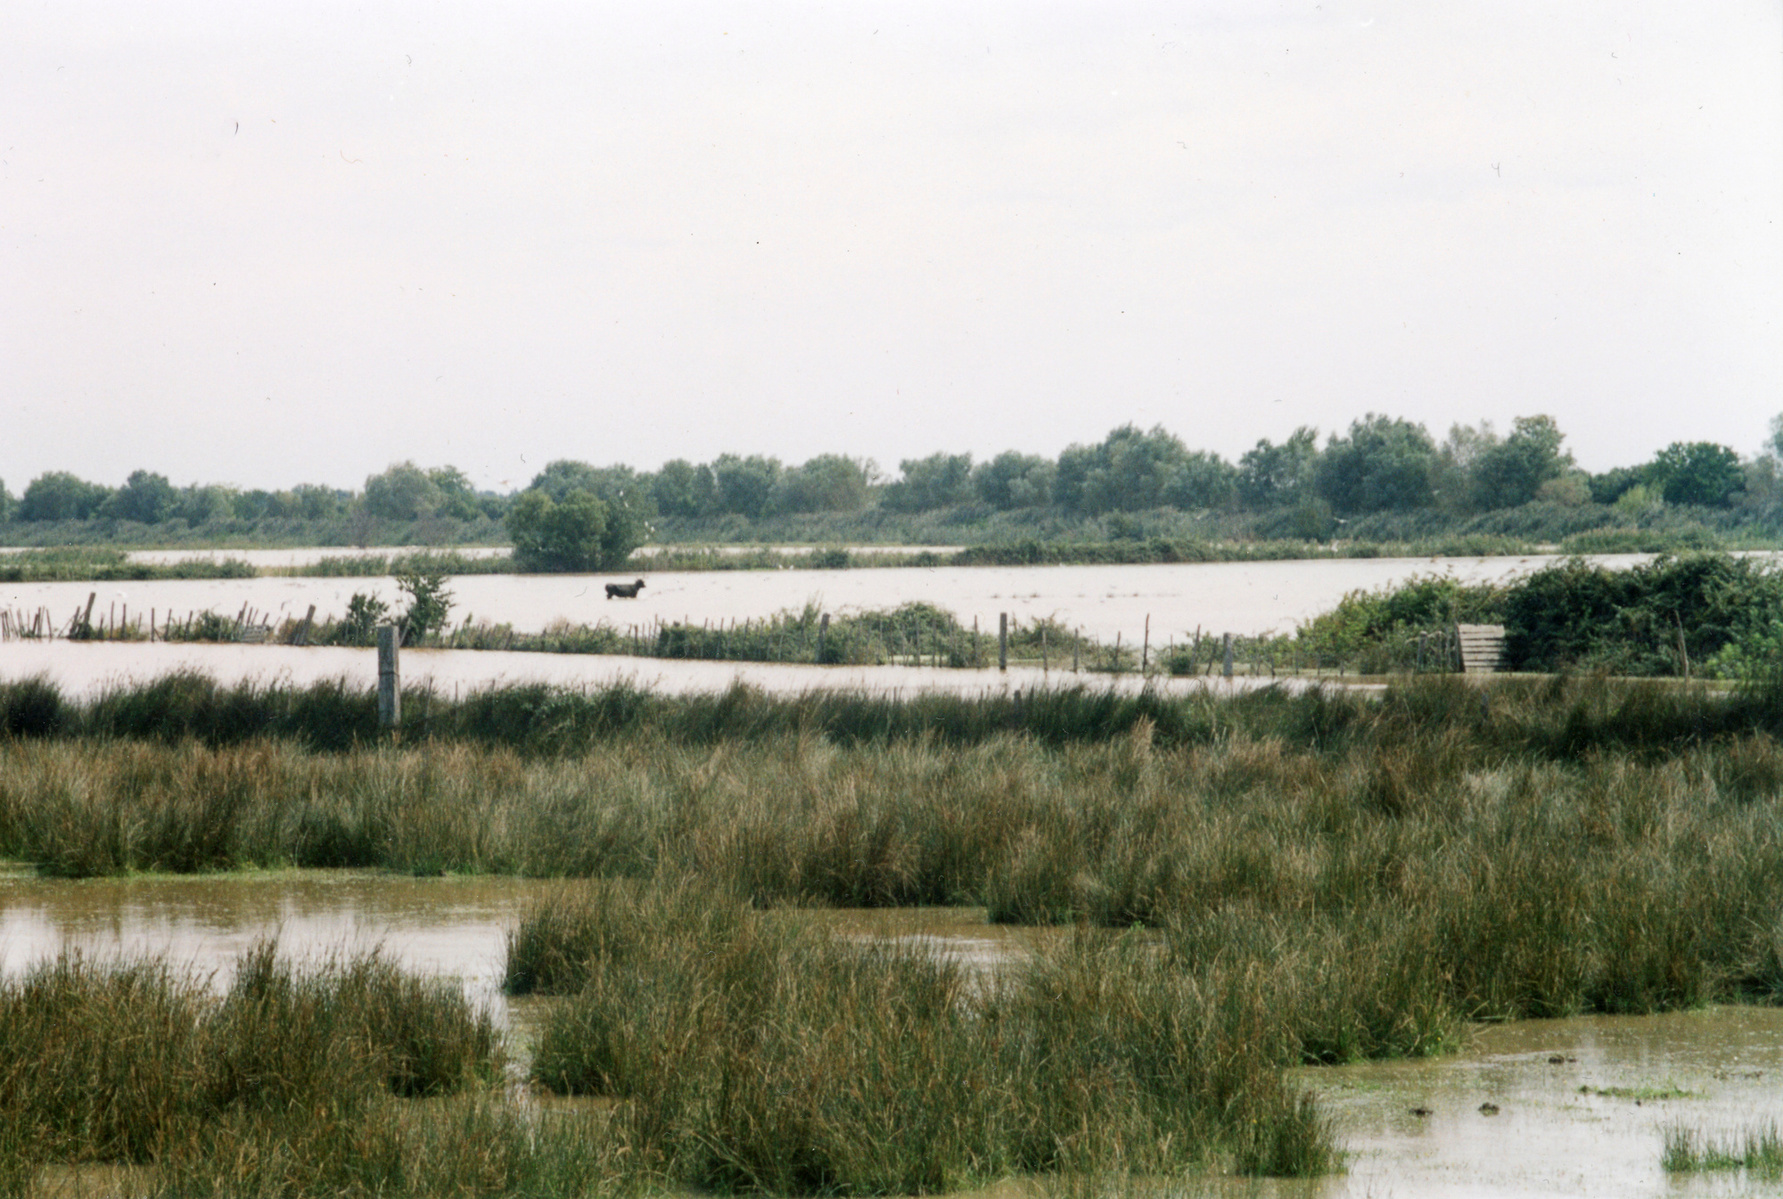 Inondation 2003 Arles, Photographie d’archive de Mme Evelyne G.